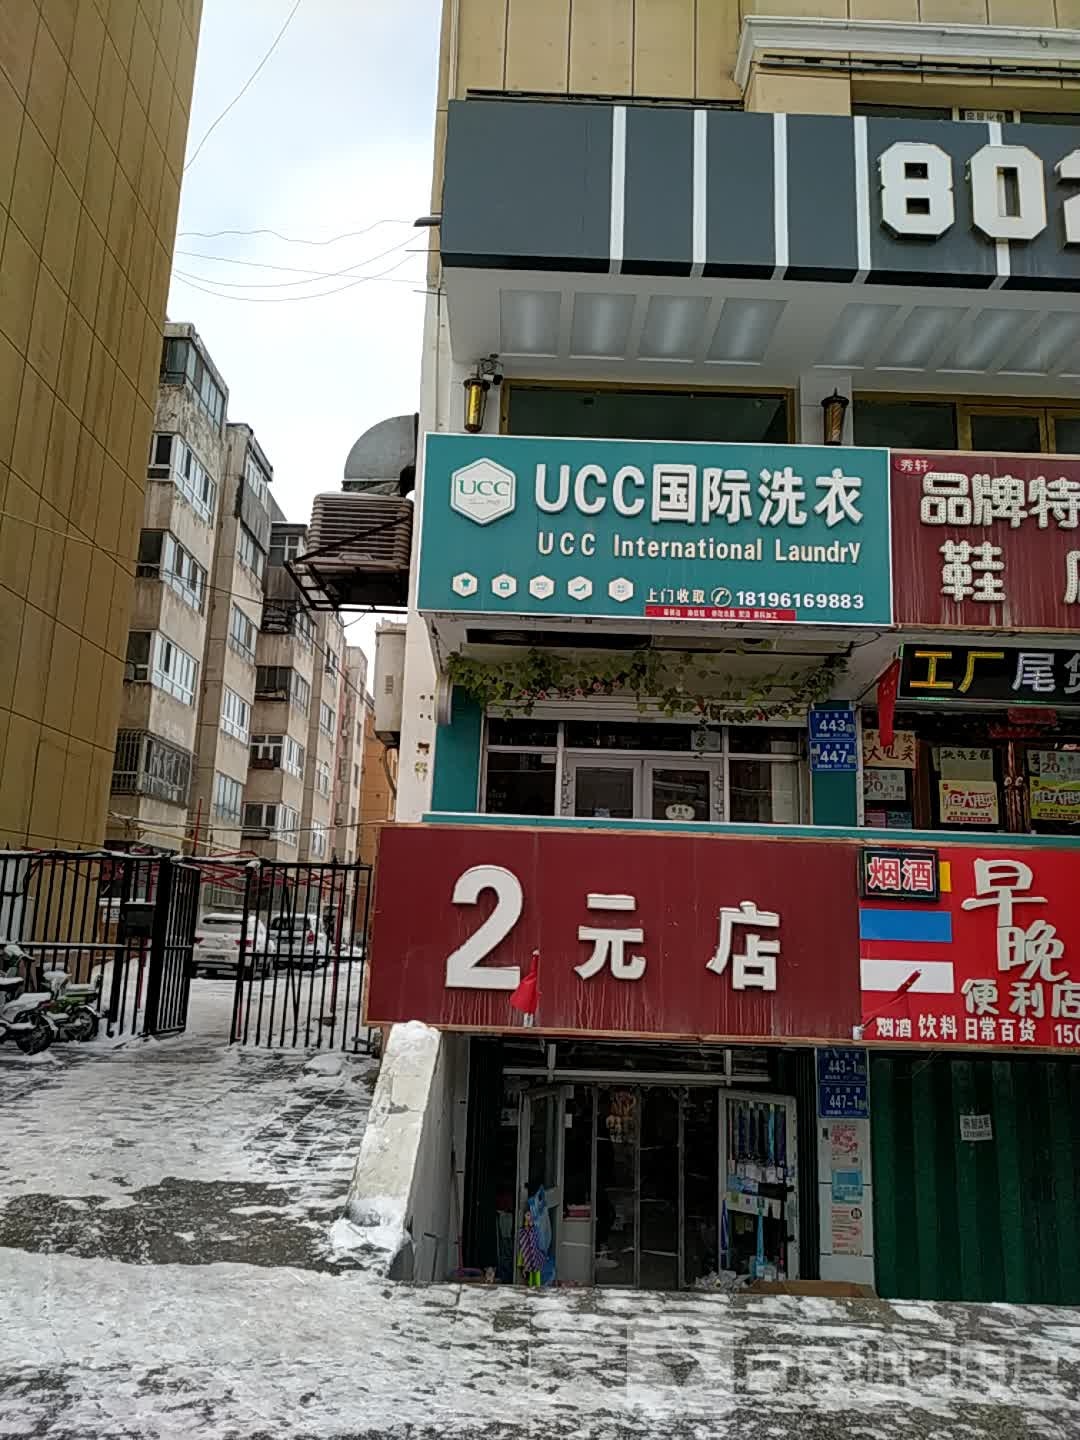 UCC国际洗衣(五家渠汇嘉步行街)